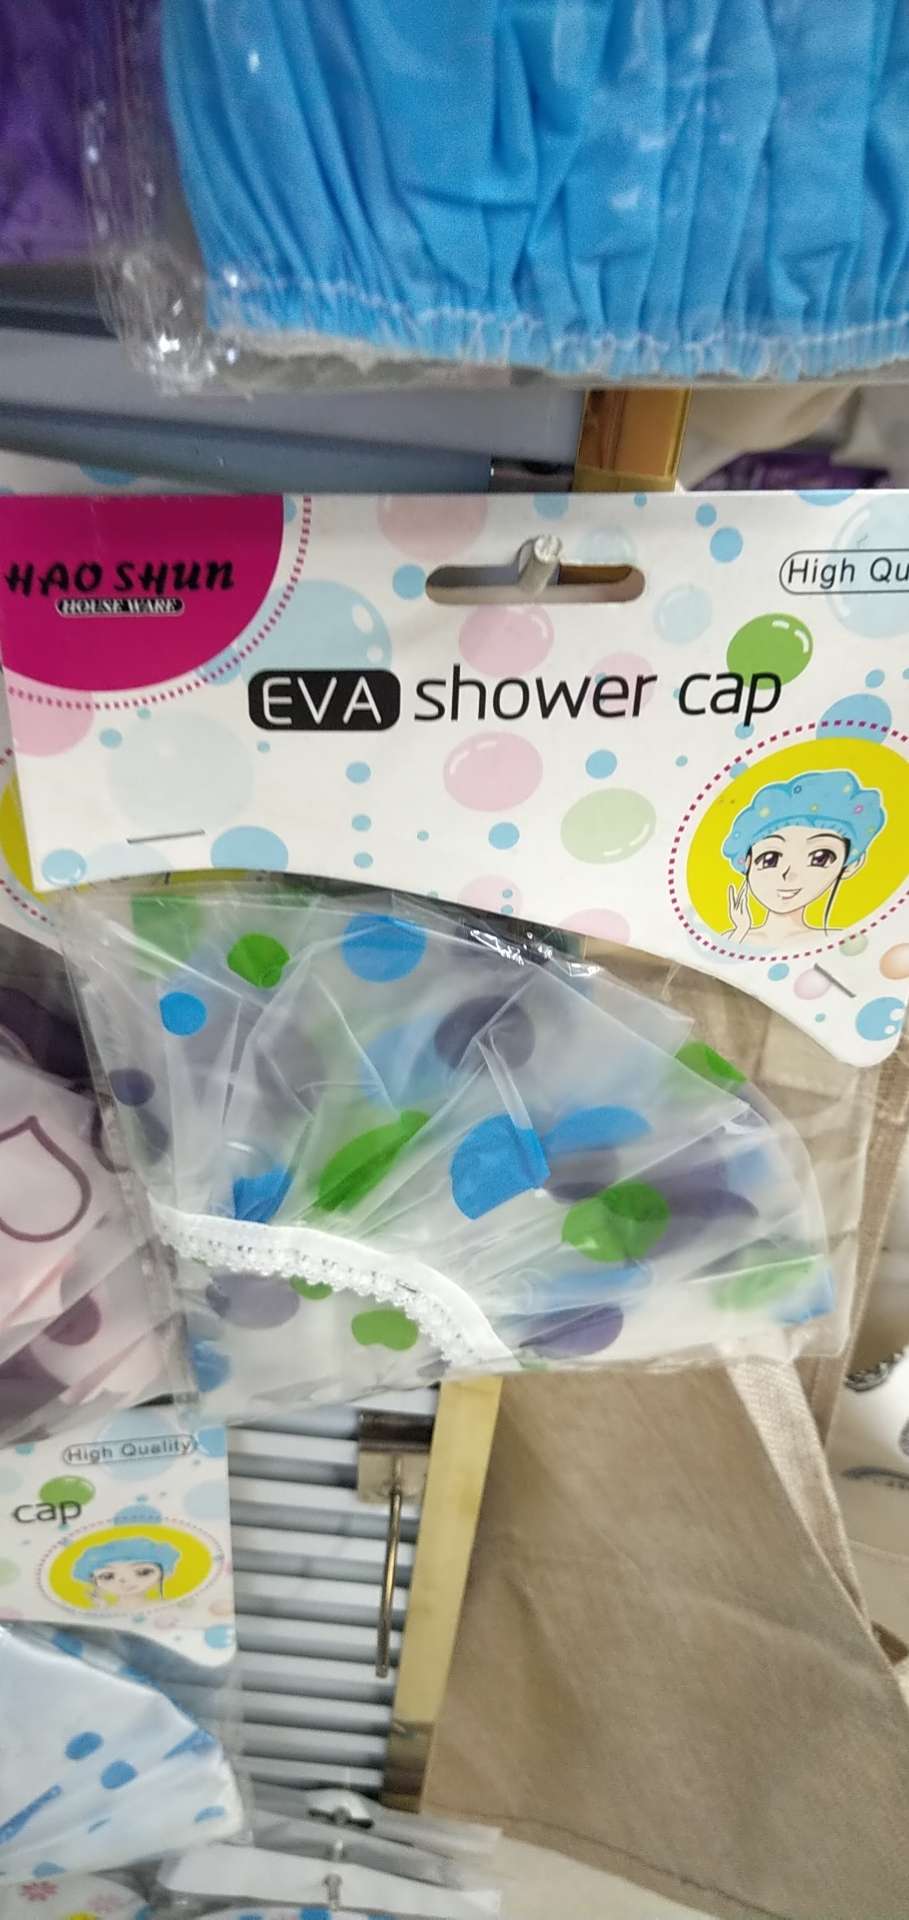 厂家直销 新款加厚防水浴帽印花洗澡头套EVA浴帽带花边订卡白底实物图